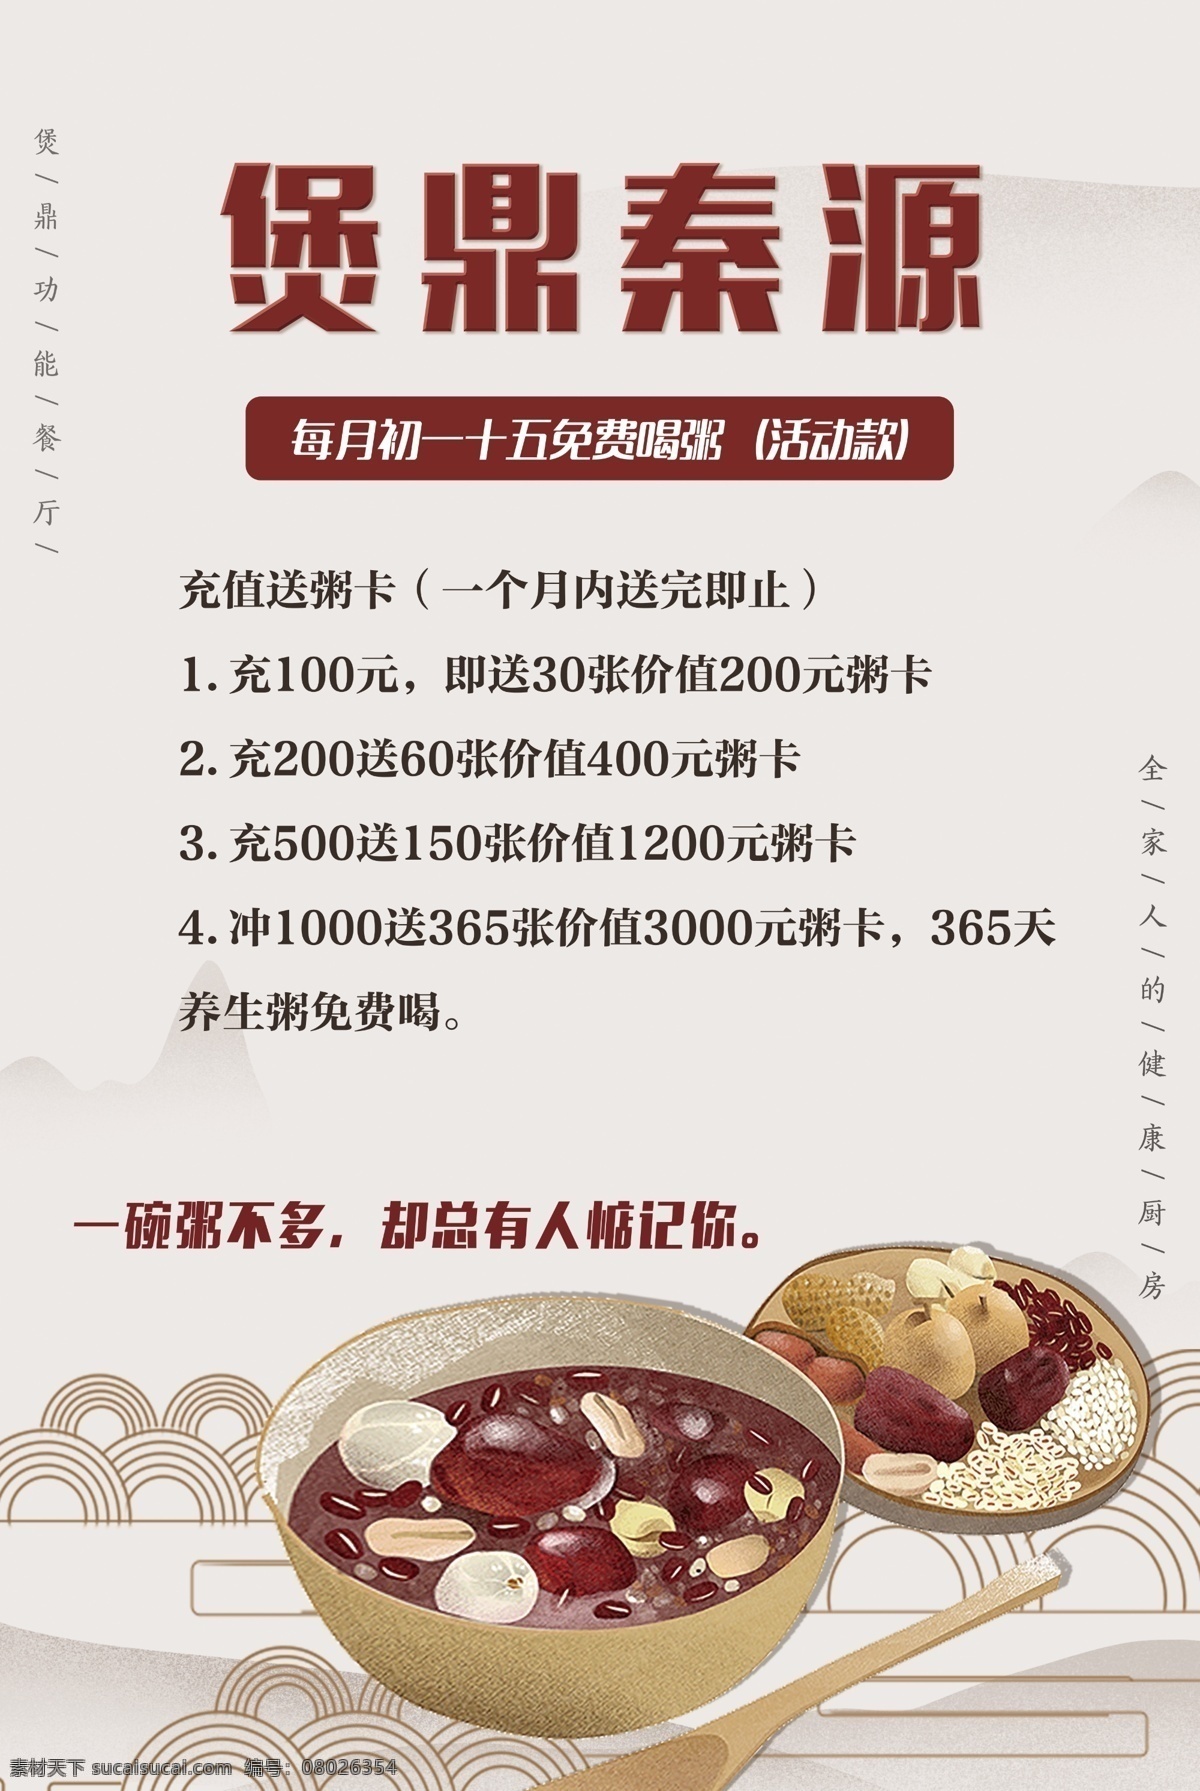 营养 粥 活动 海报 中国风 养生 汤 煲 传统 简约 简约海报 养生海报 红色 白色 插画 线条 优惠海报